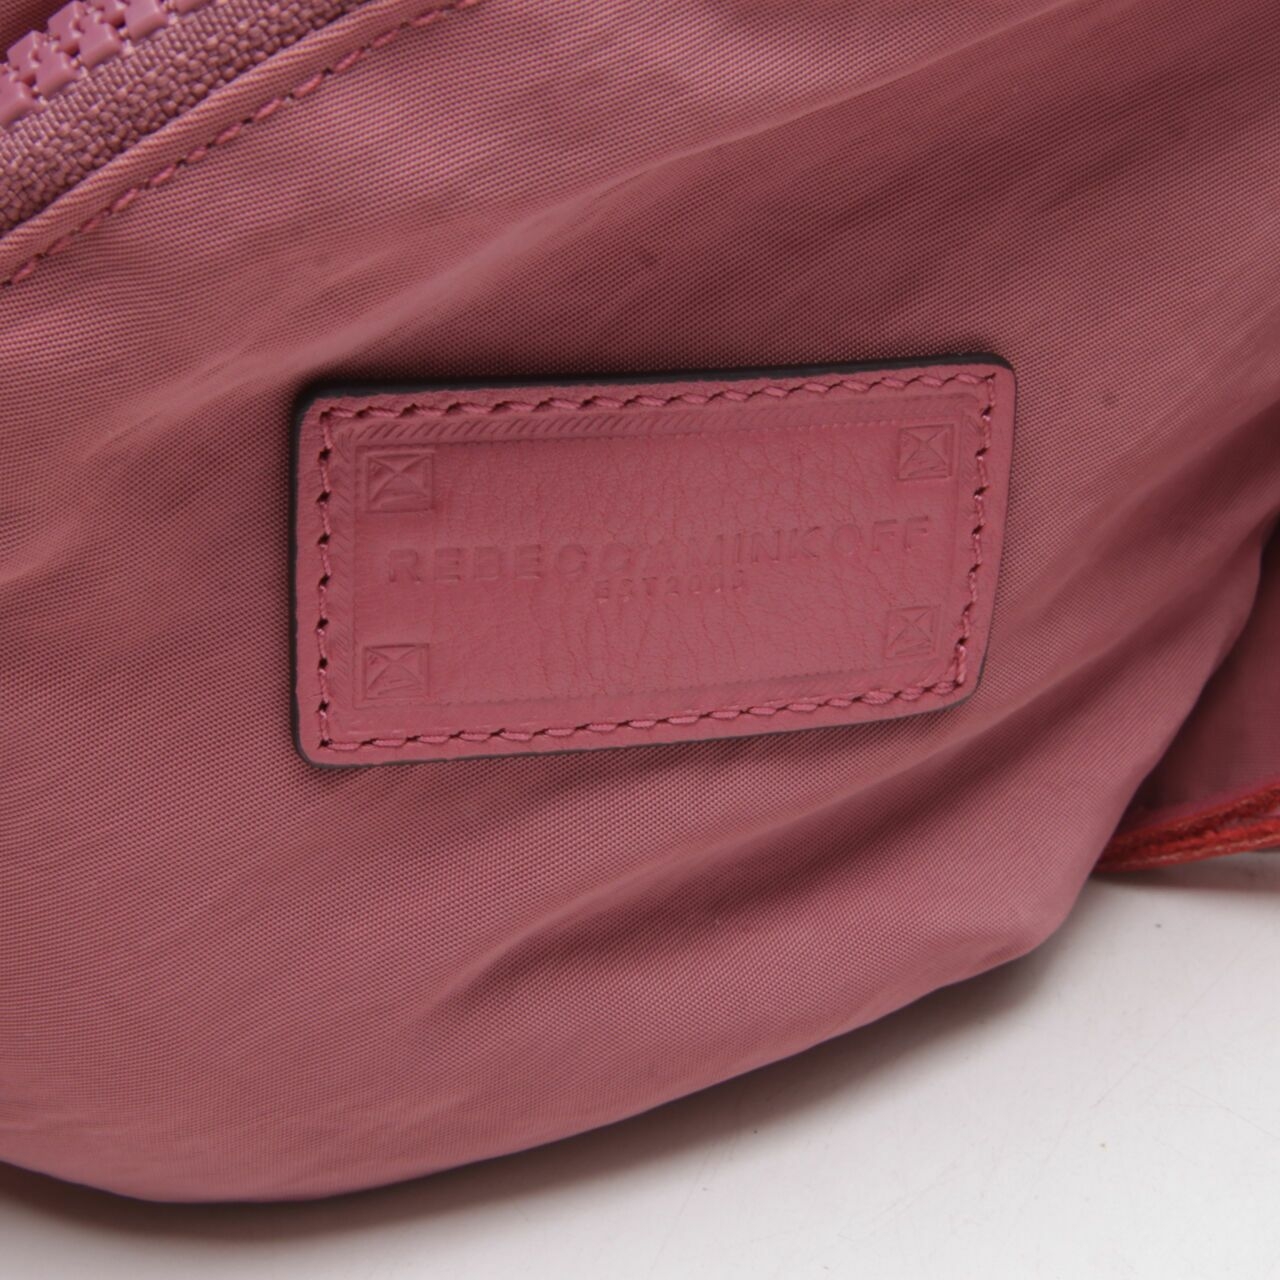 Rebbecca Minkoff Pink Backpack